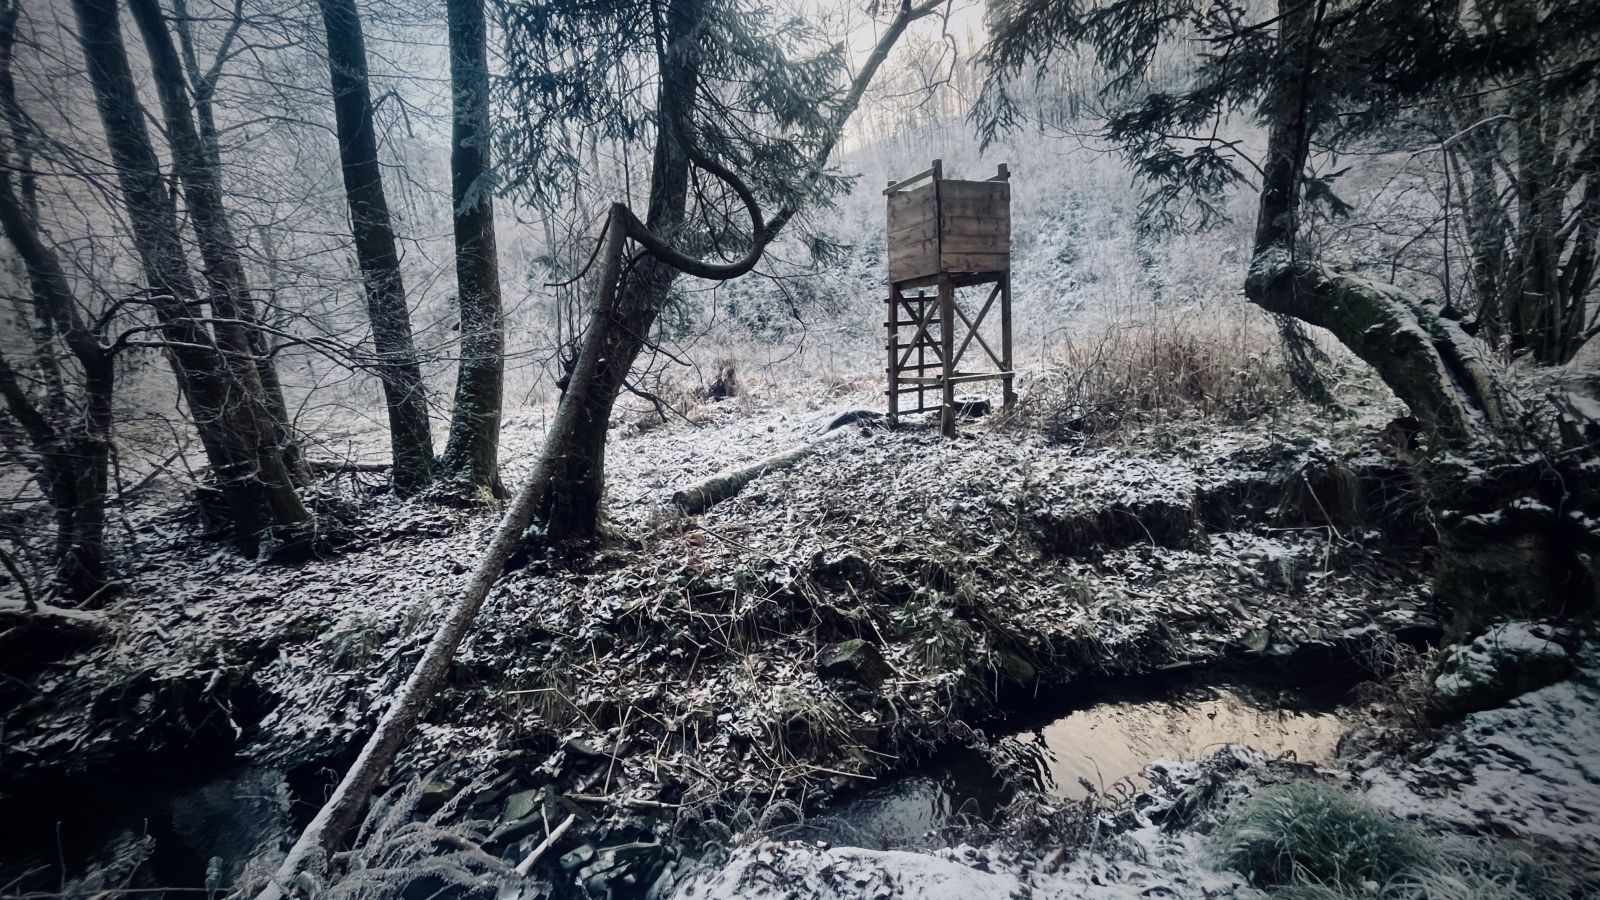 Winterzeit ist Jagdzeit. Ein Drückjagdstand im Winterwald.